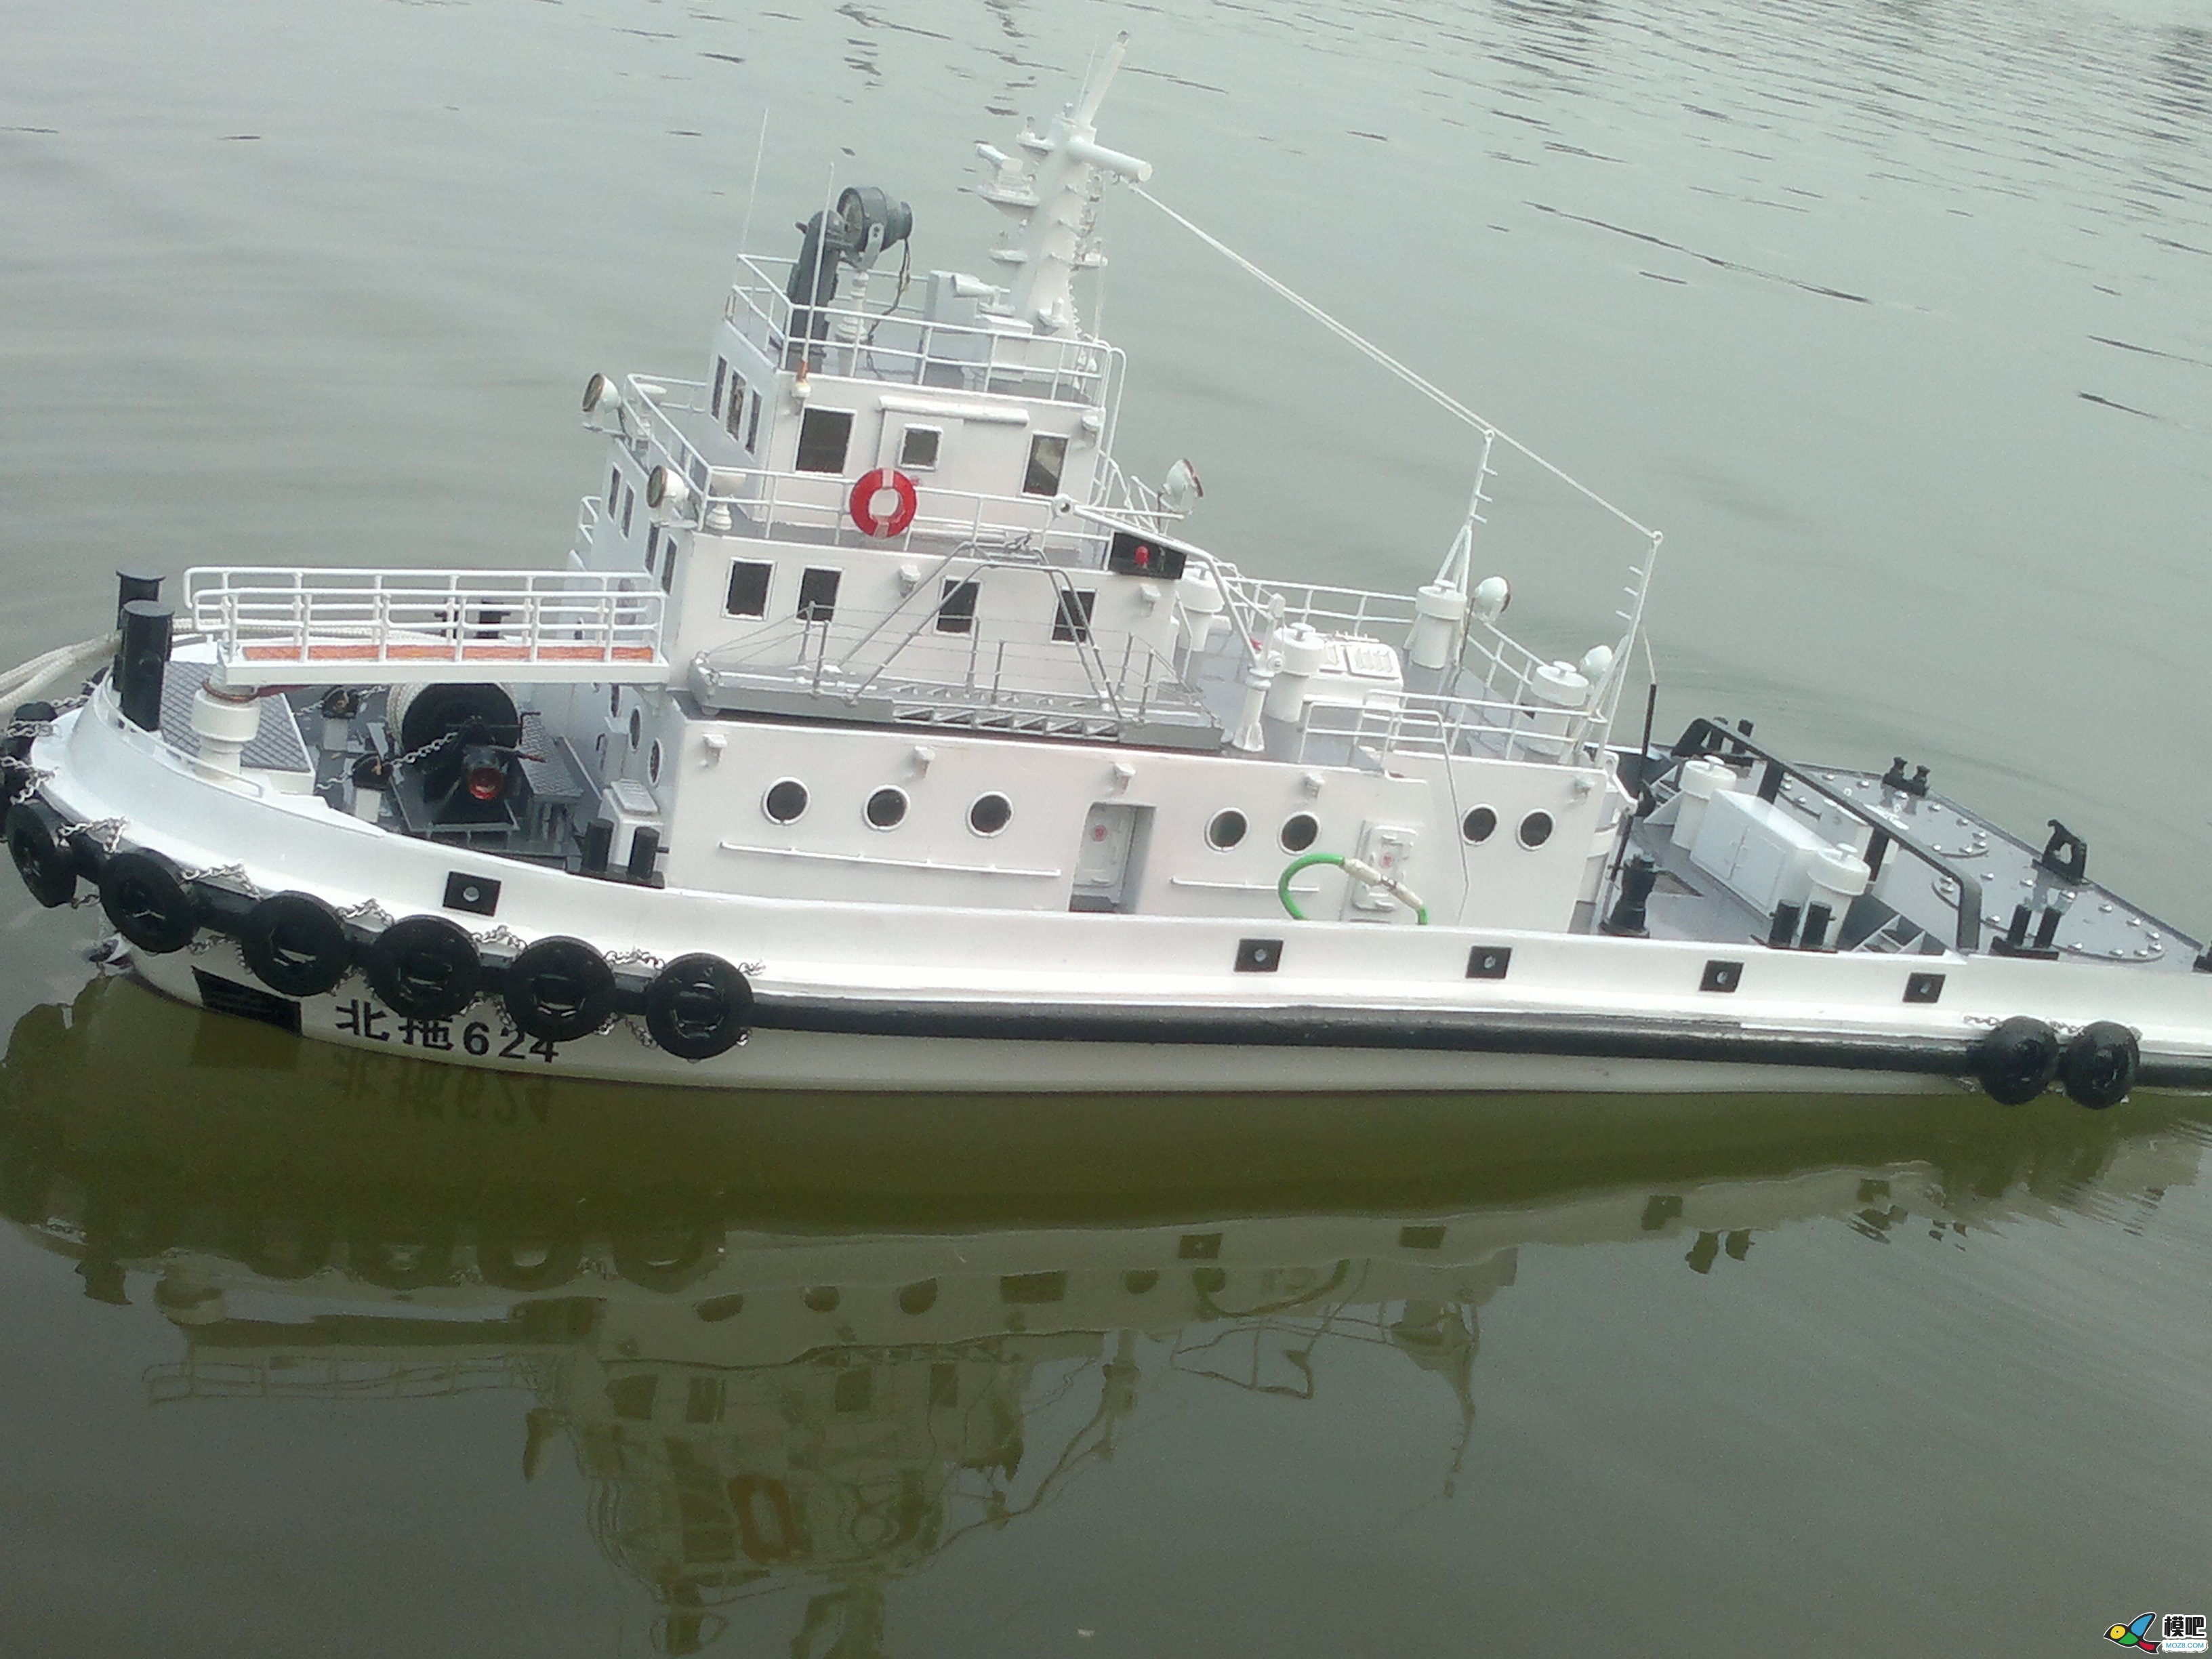 因为怀念所以制作，海军拖船制作小记 海军小型拖船,中国海军拖船,海军布缆船 作者:艇长 4495 